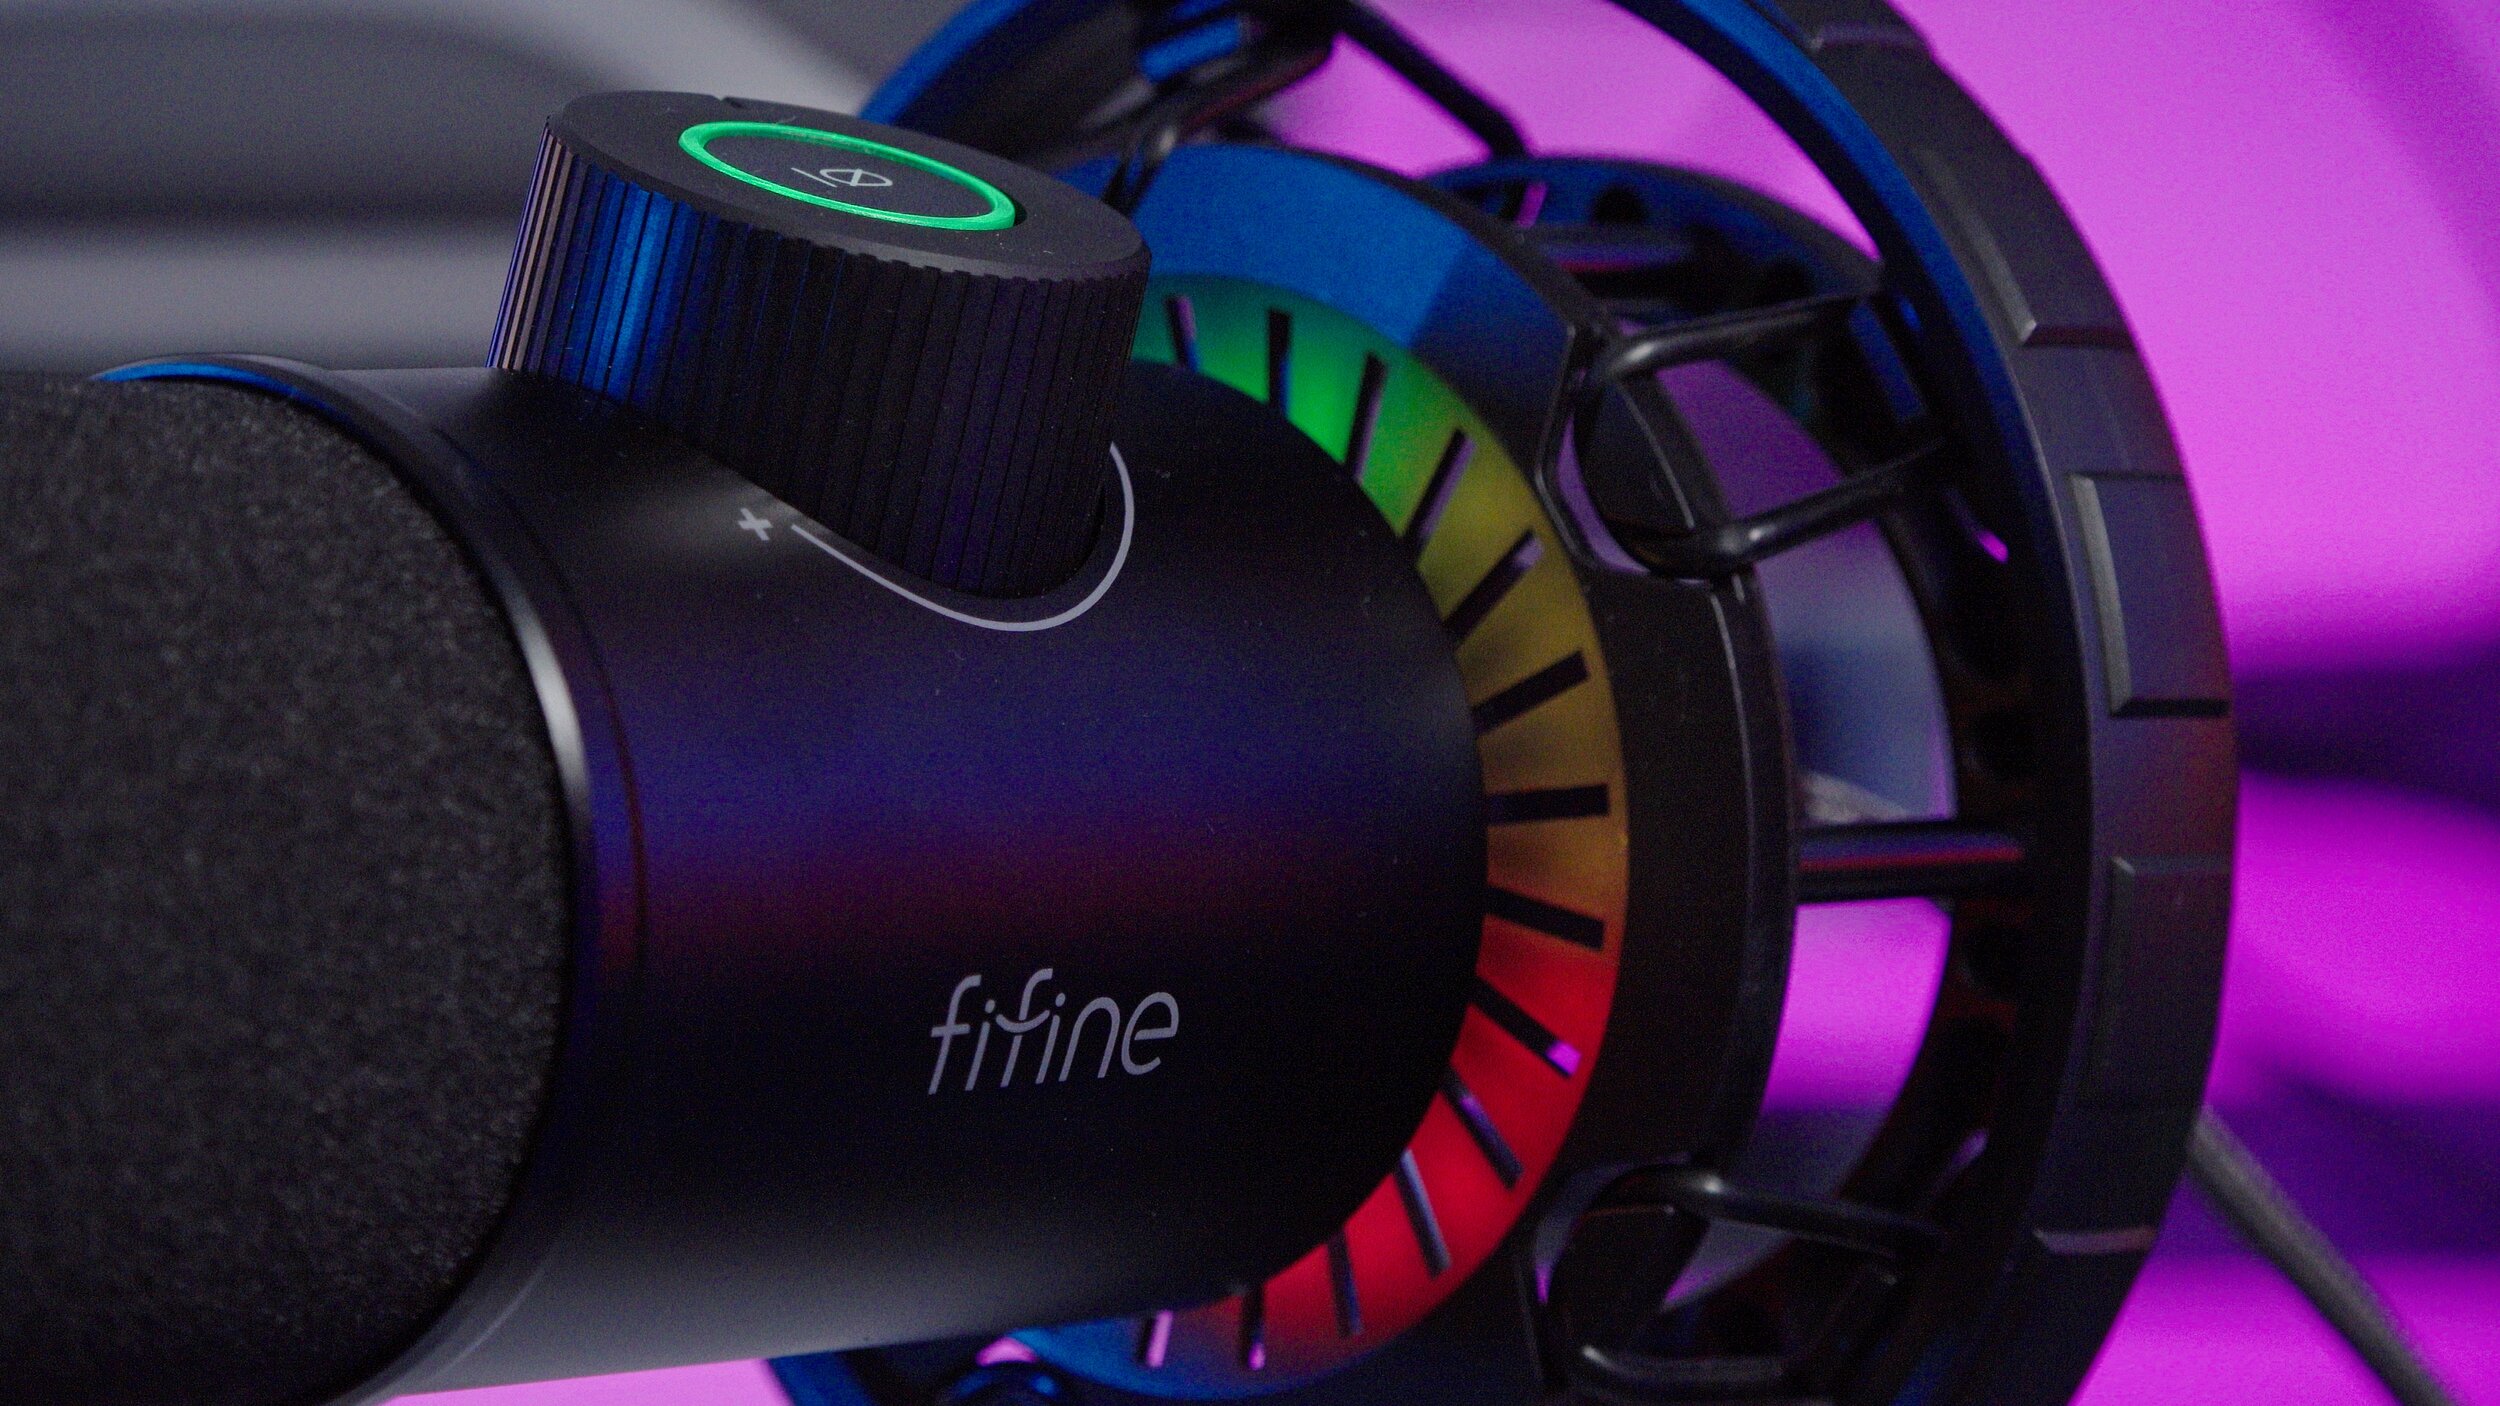 Fifine K658 - Budget Dynamic USB Mic with RGB! —